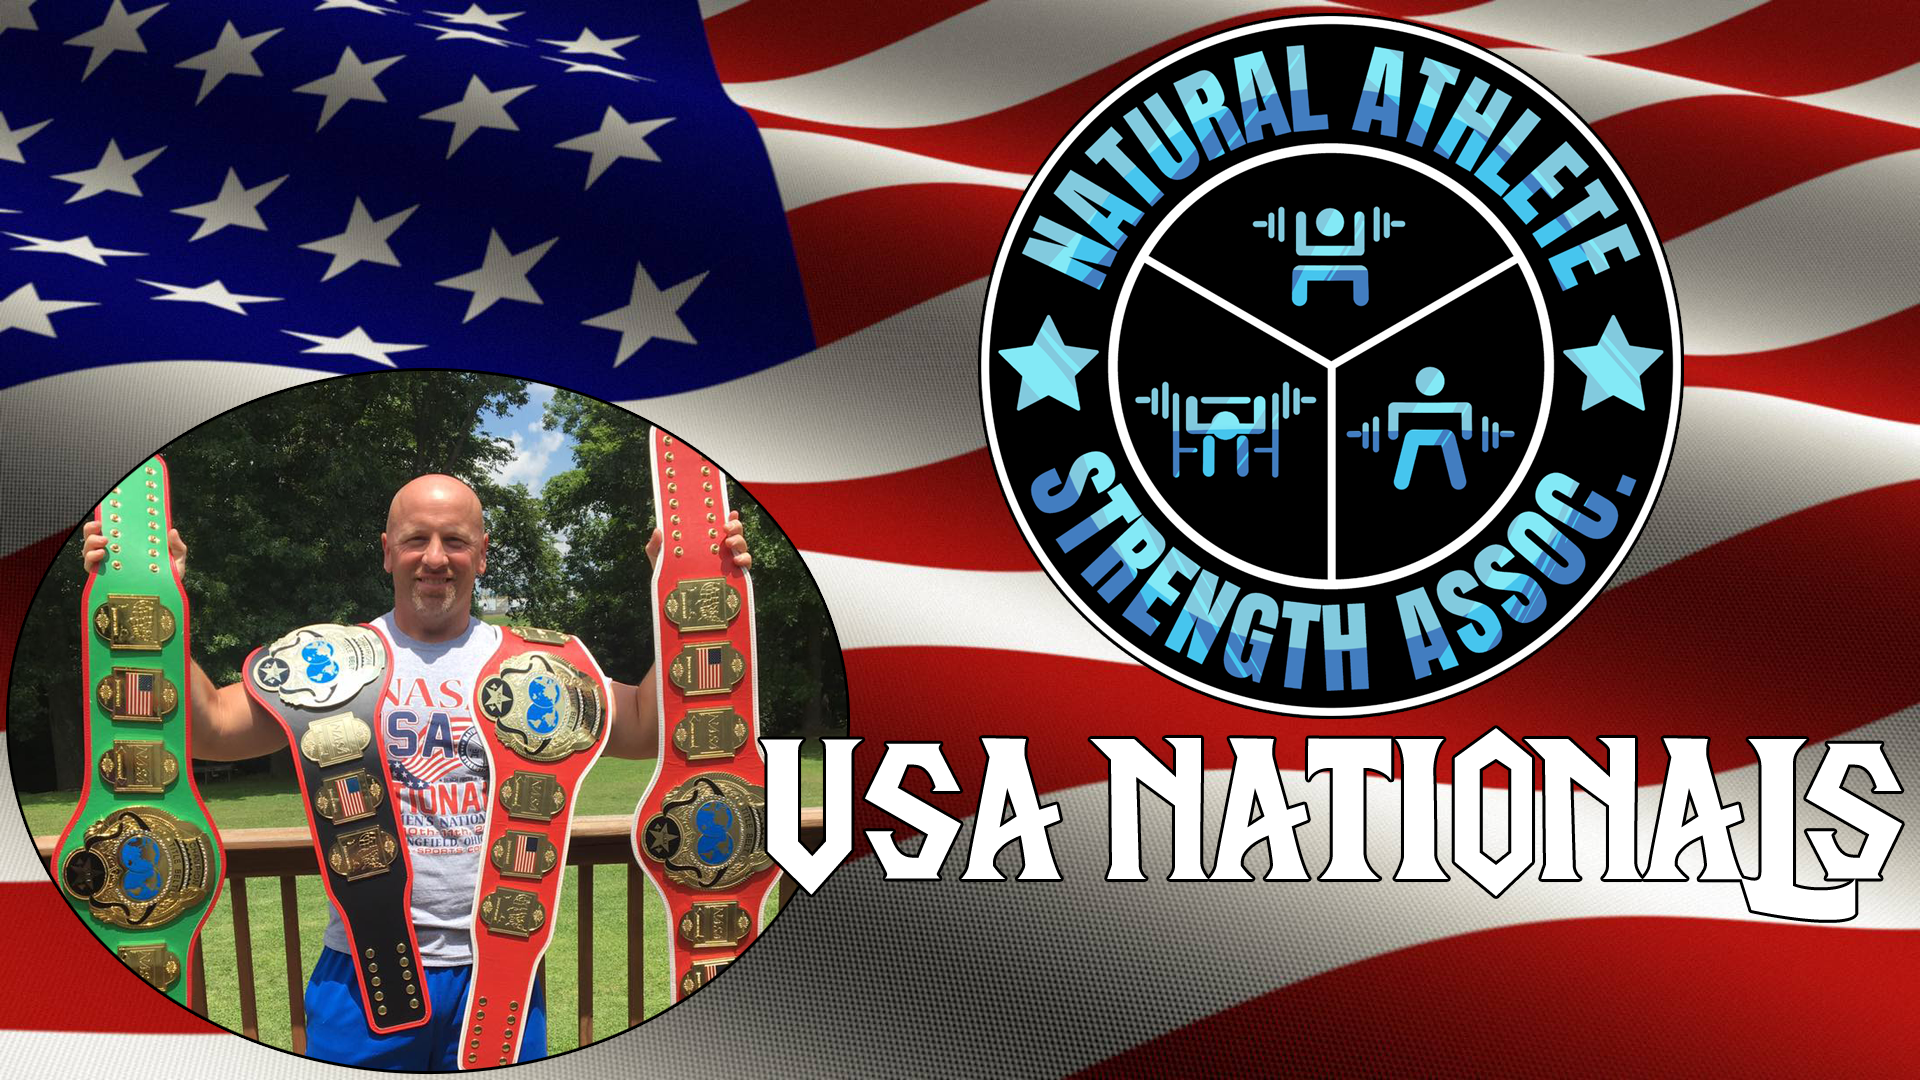 NASA USA Nationals